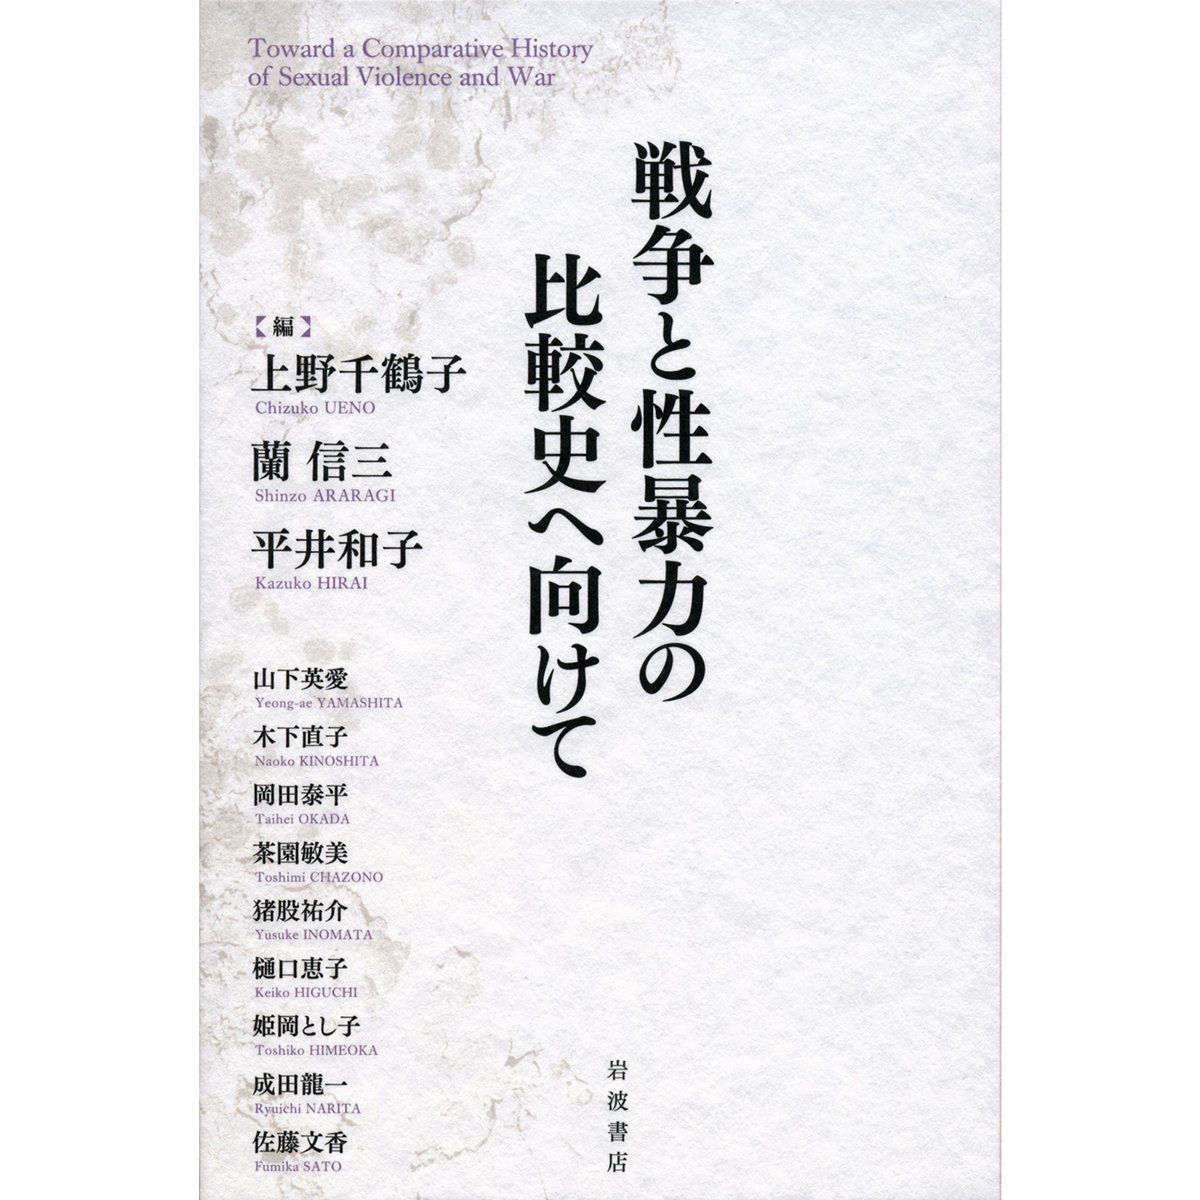 Kastori　上野千鶴子、平井和子ほか編『戦争と性暴力の比較史へ向けて』　Bookstore